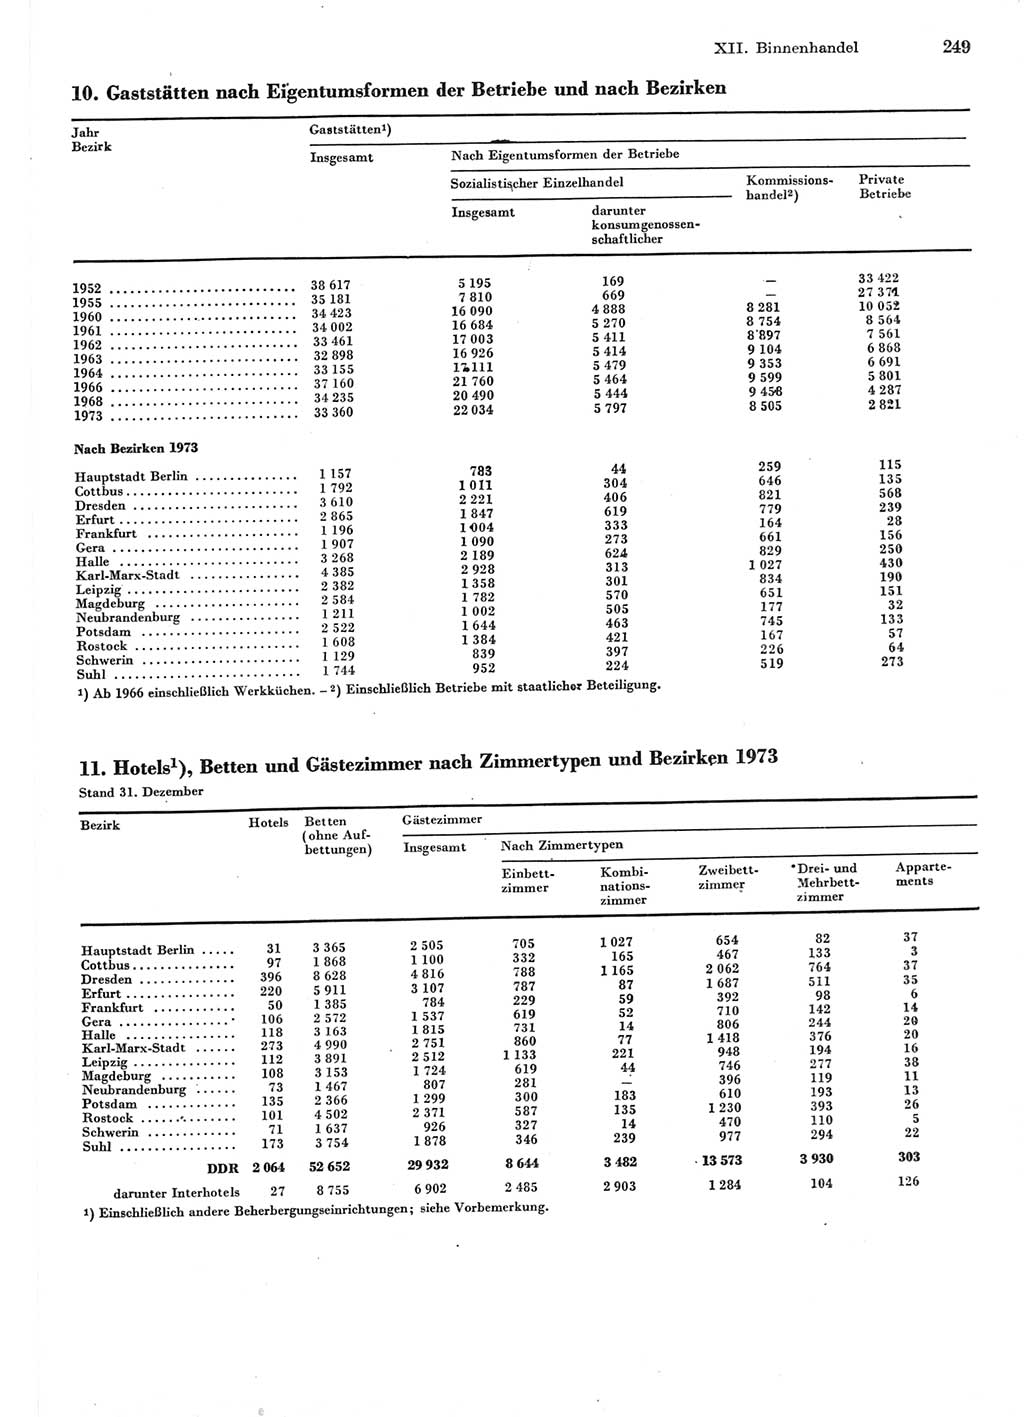 Statistisches Jahrbuch der Deutschen Demokratischen Republik (DDR) 1977, Seite 249 (Stat. Jb. DDR 1977, S. 249)